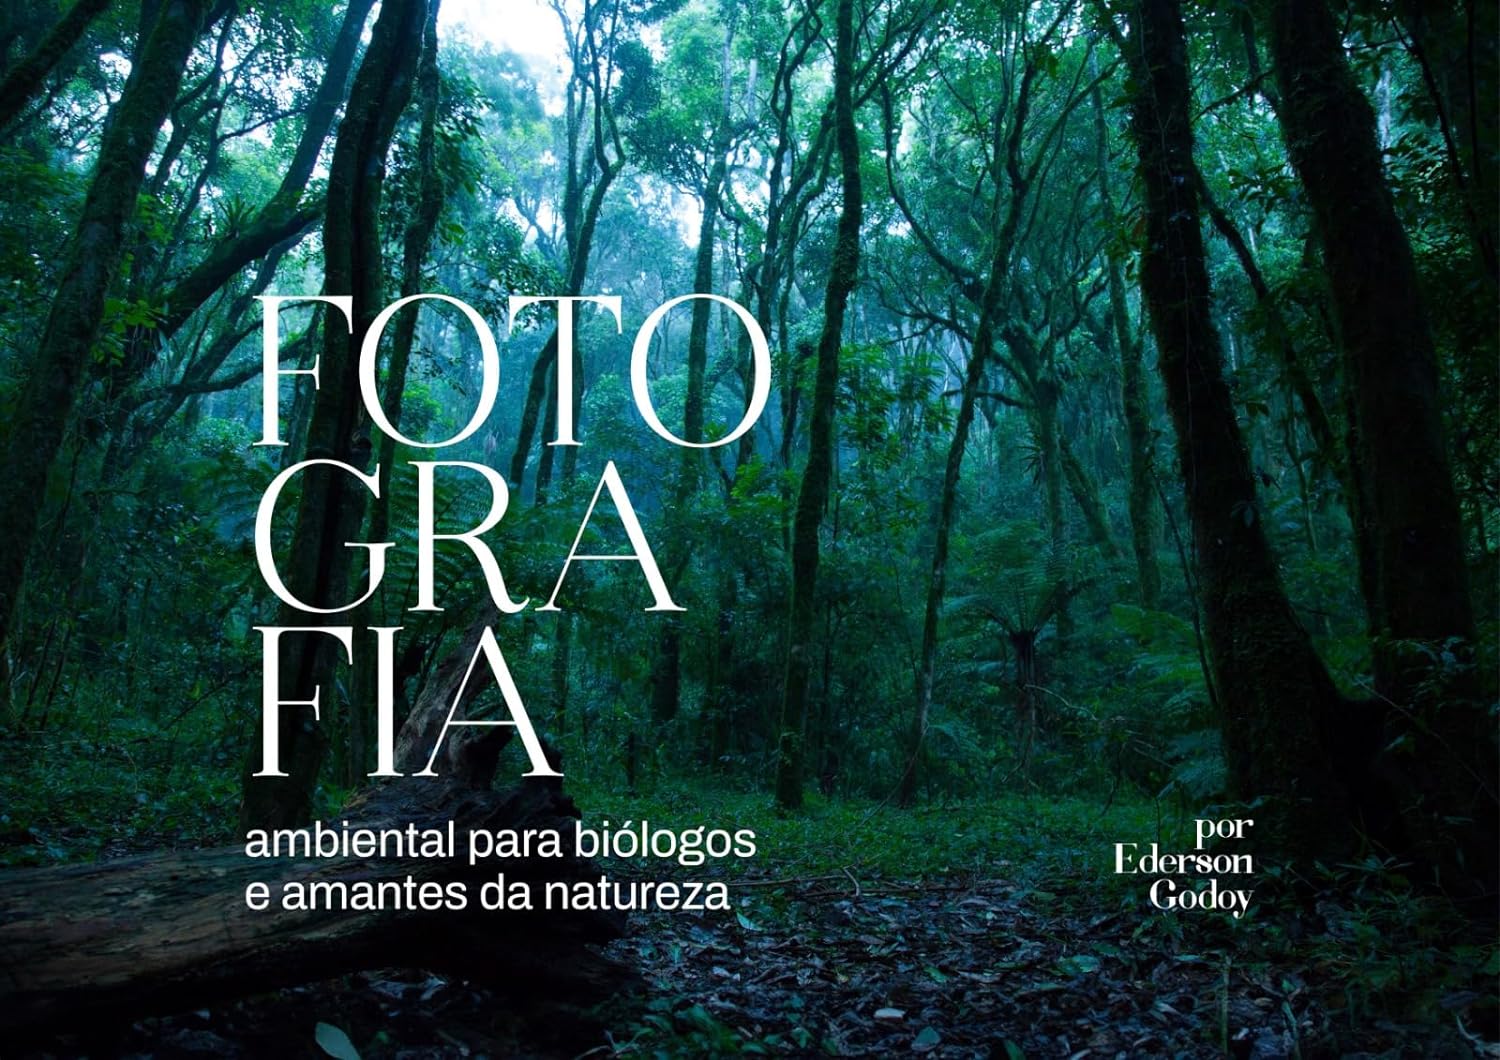 Biólogo de Poços lança livro de fotografia ambiental